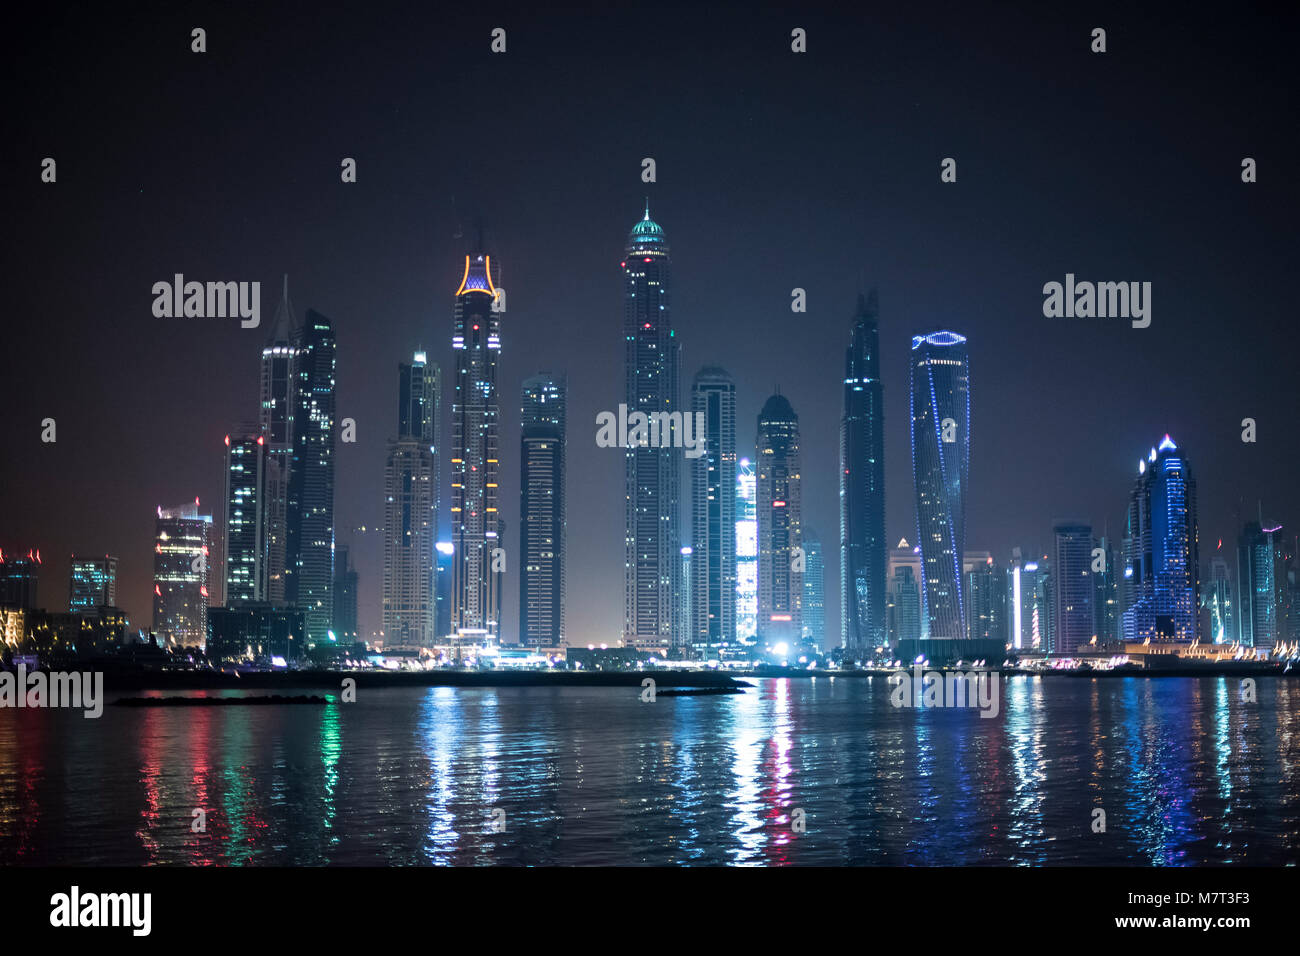 Dubai skyline with buildings at night Stock Photo